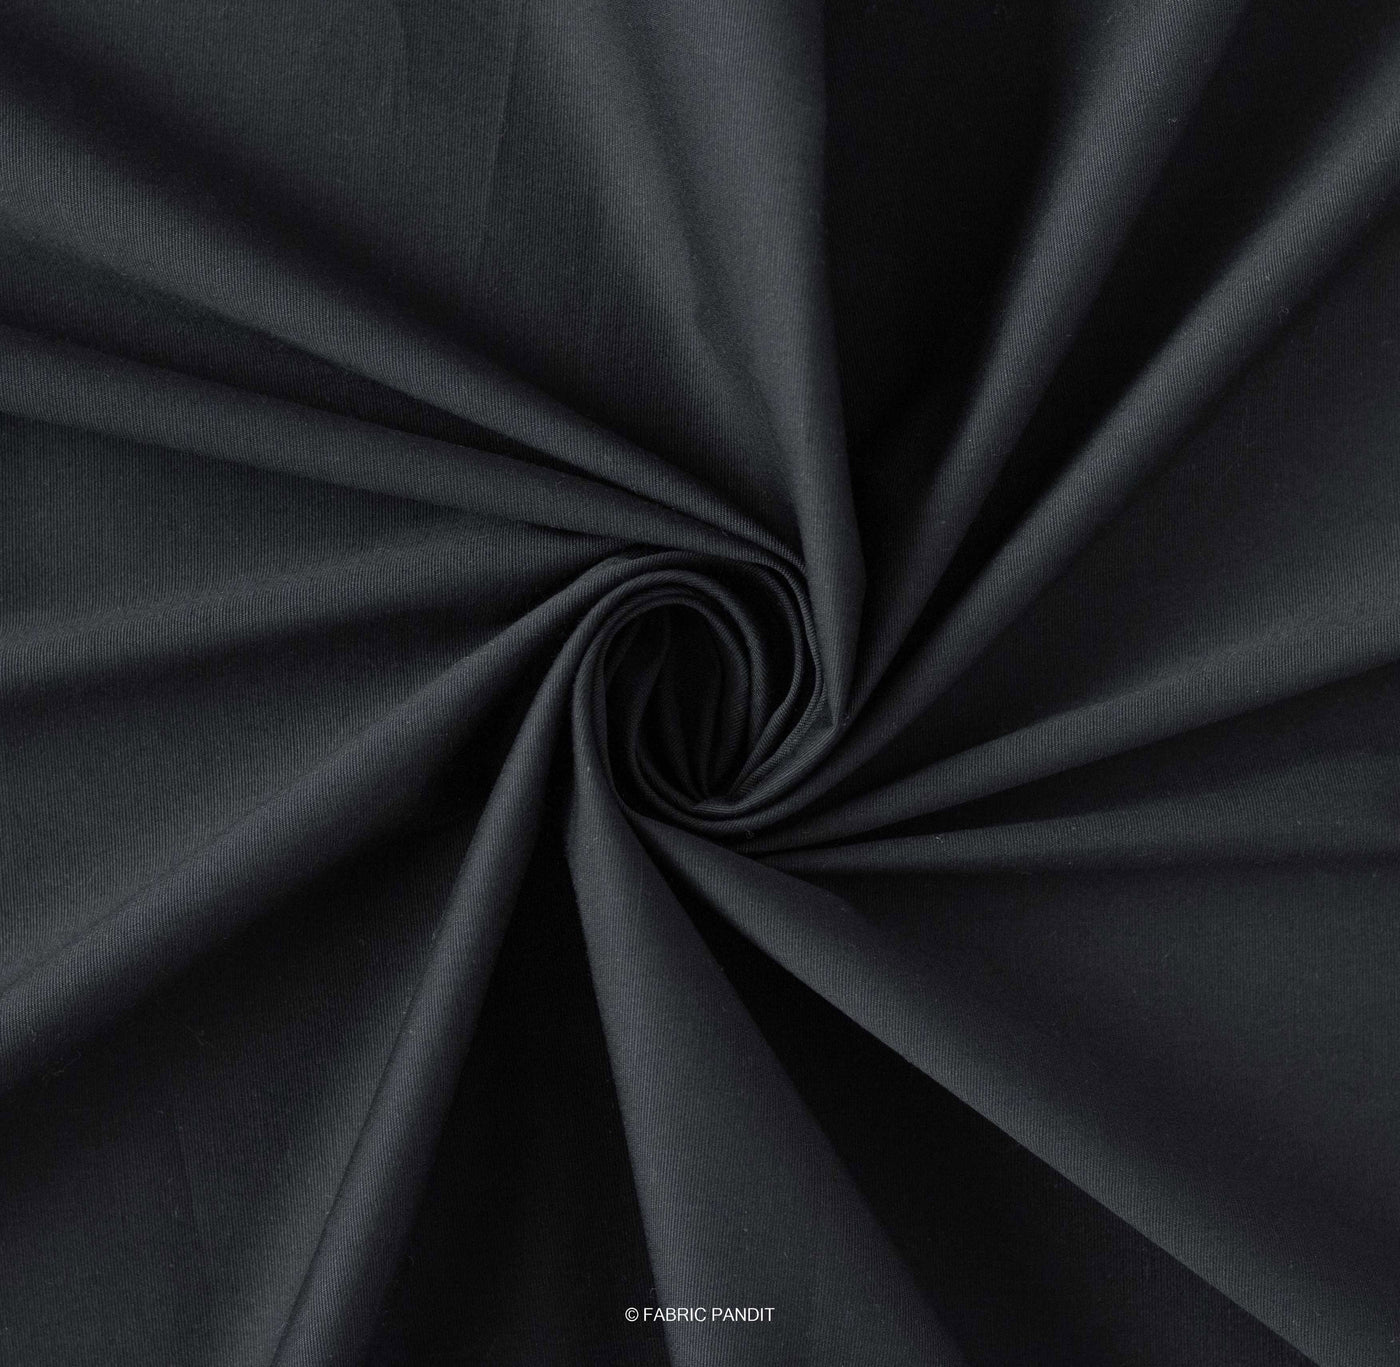 Fabric Pandit Cut Piece 0.75M (CUT PIECE) Black Color Plain Cotton Satin Lycra Fabric (Width 42 Inches)